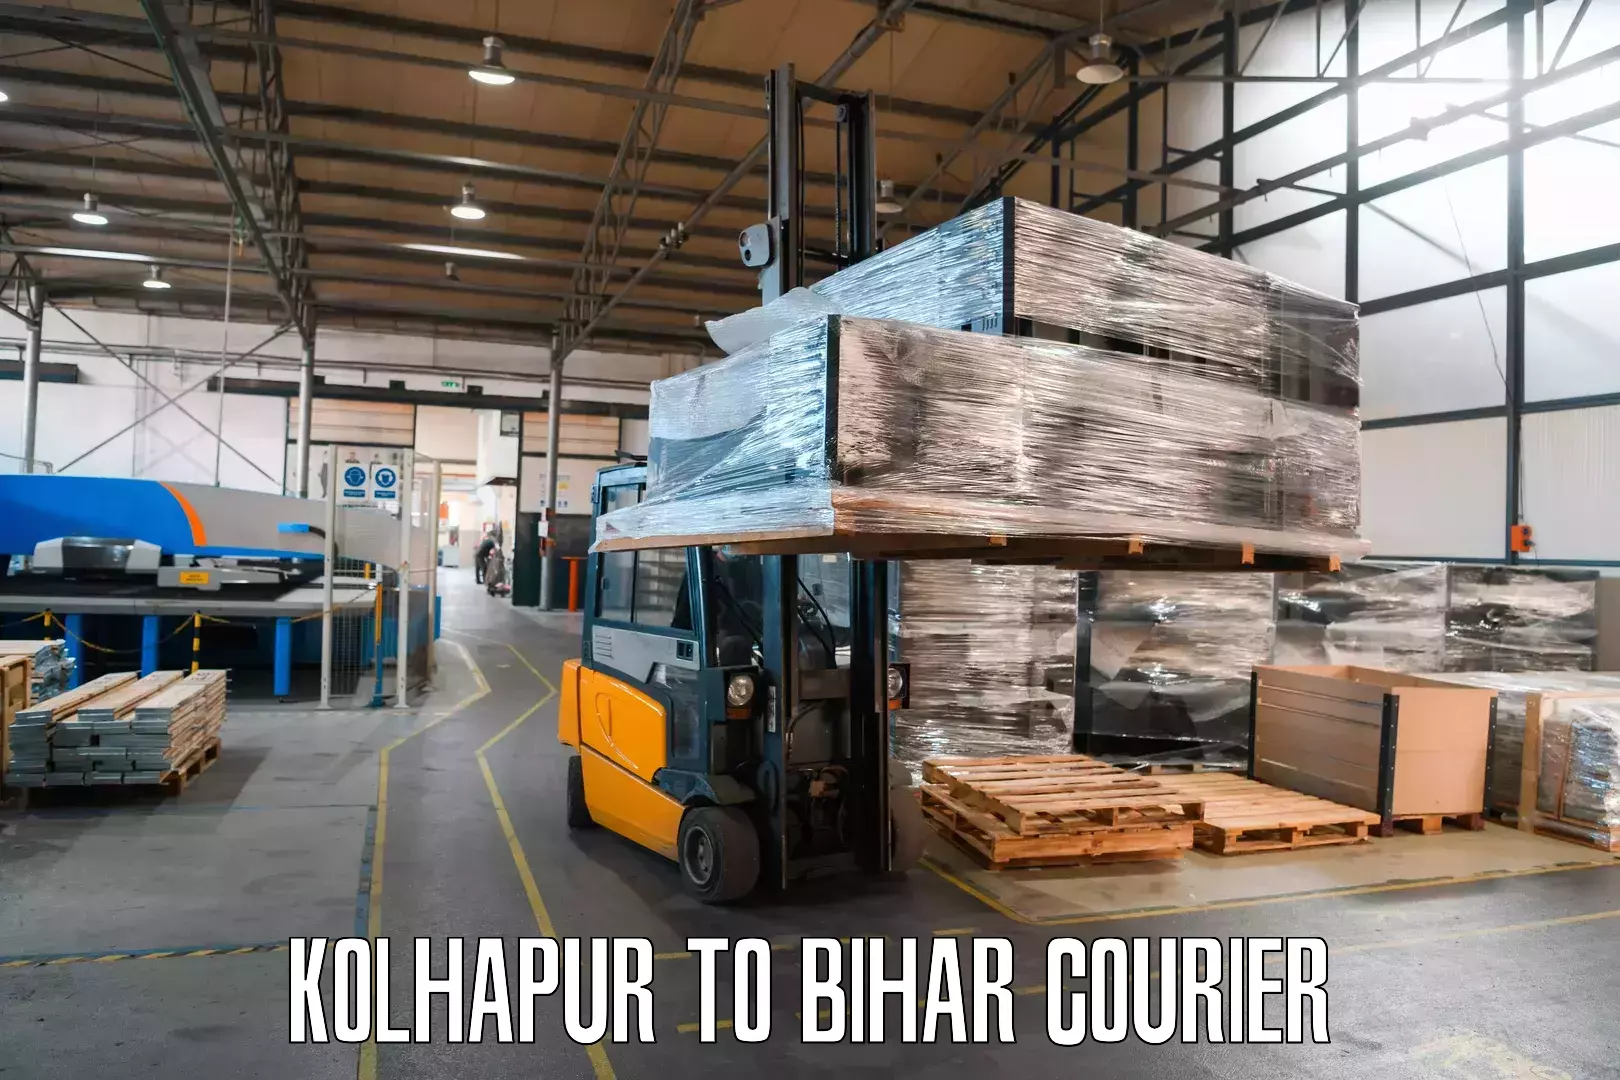 Express mail service Kolhapur to Bihar